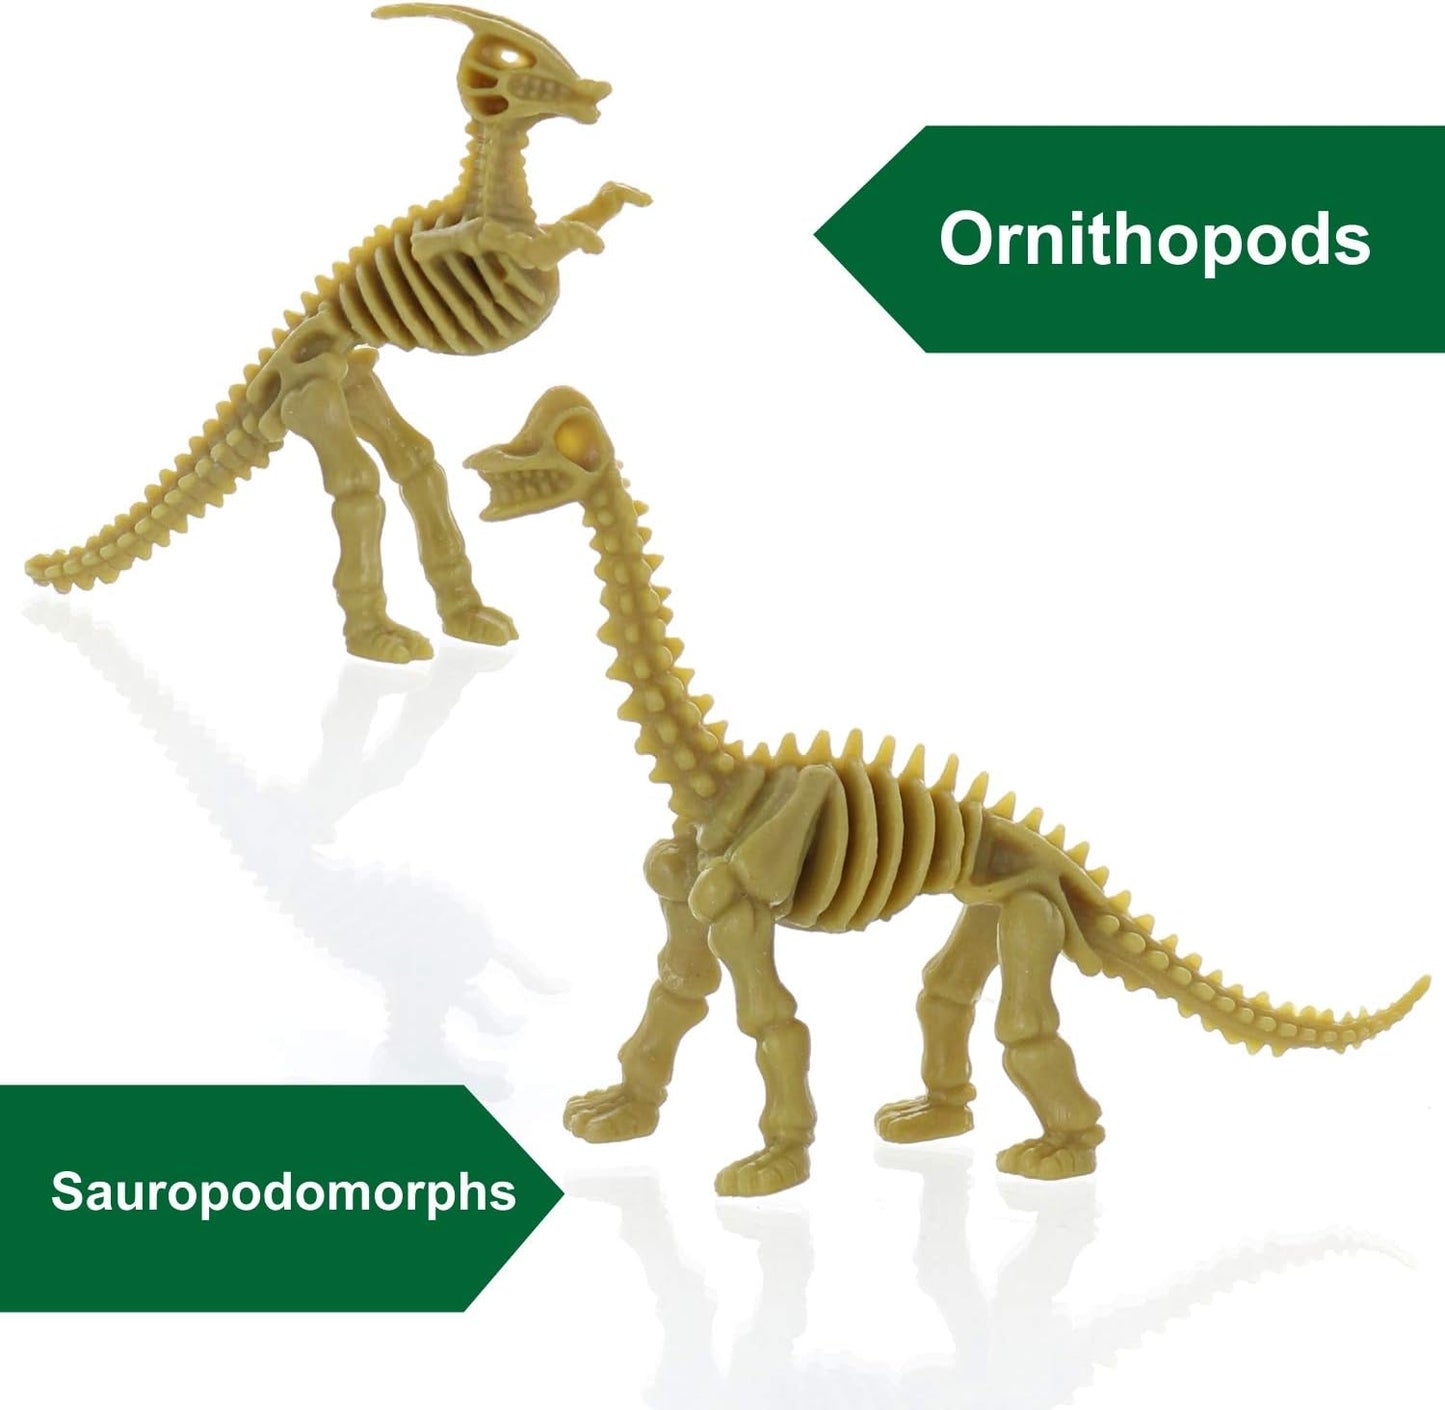 GIFTEXPRESS 24 piezas de esqueletos fósiles de dinosaurio, 3.7 pulgadas, figuras de huesos de dinosaurio surtidos 